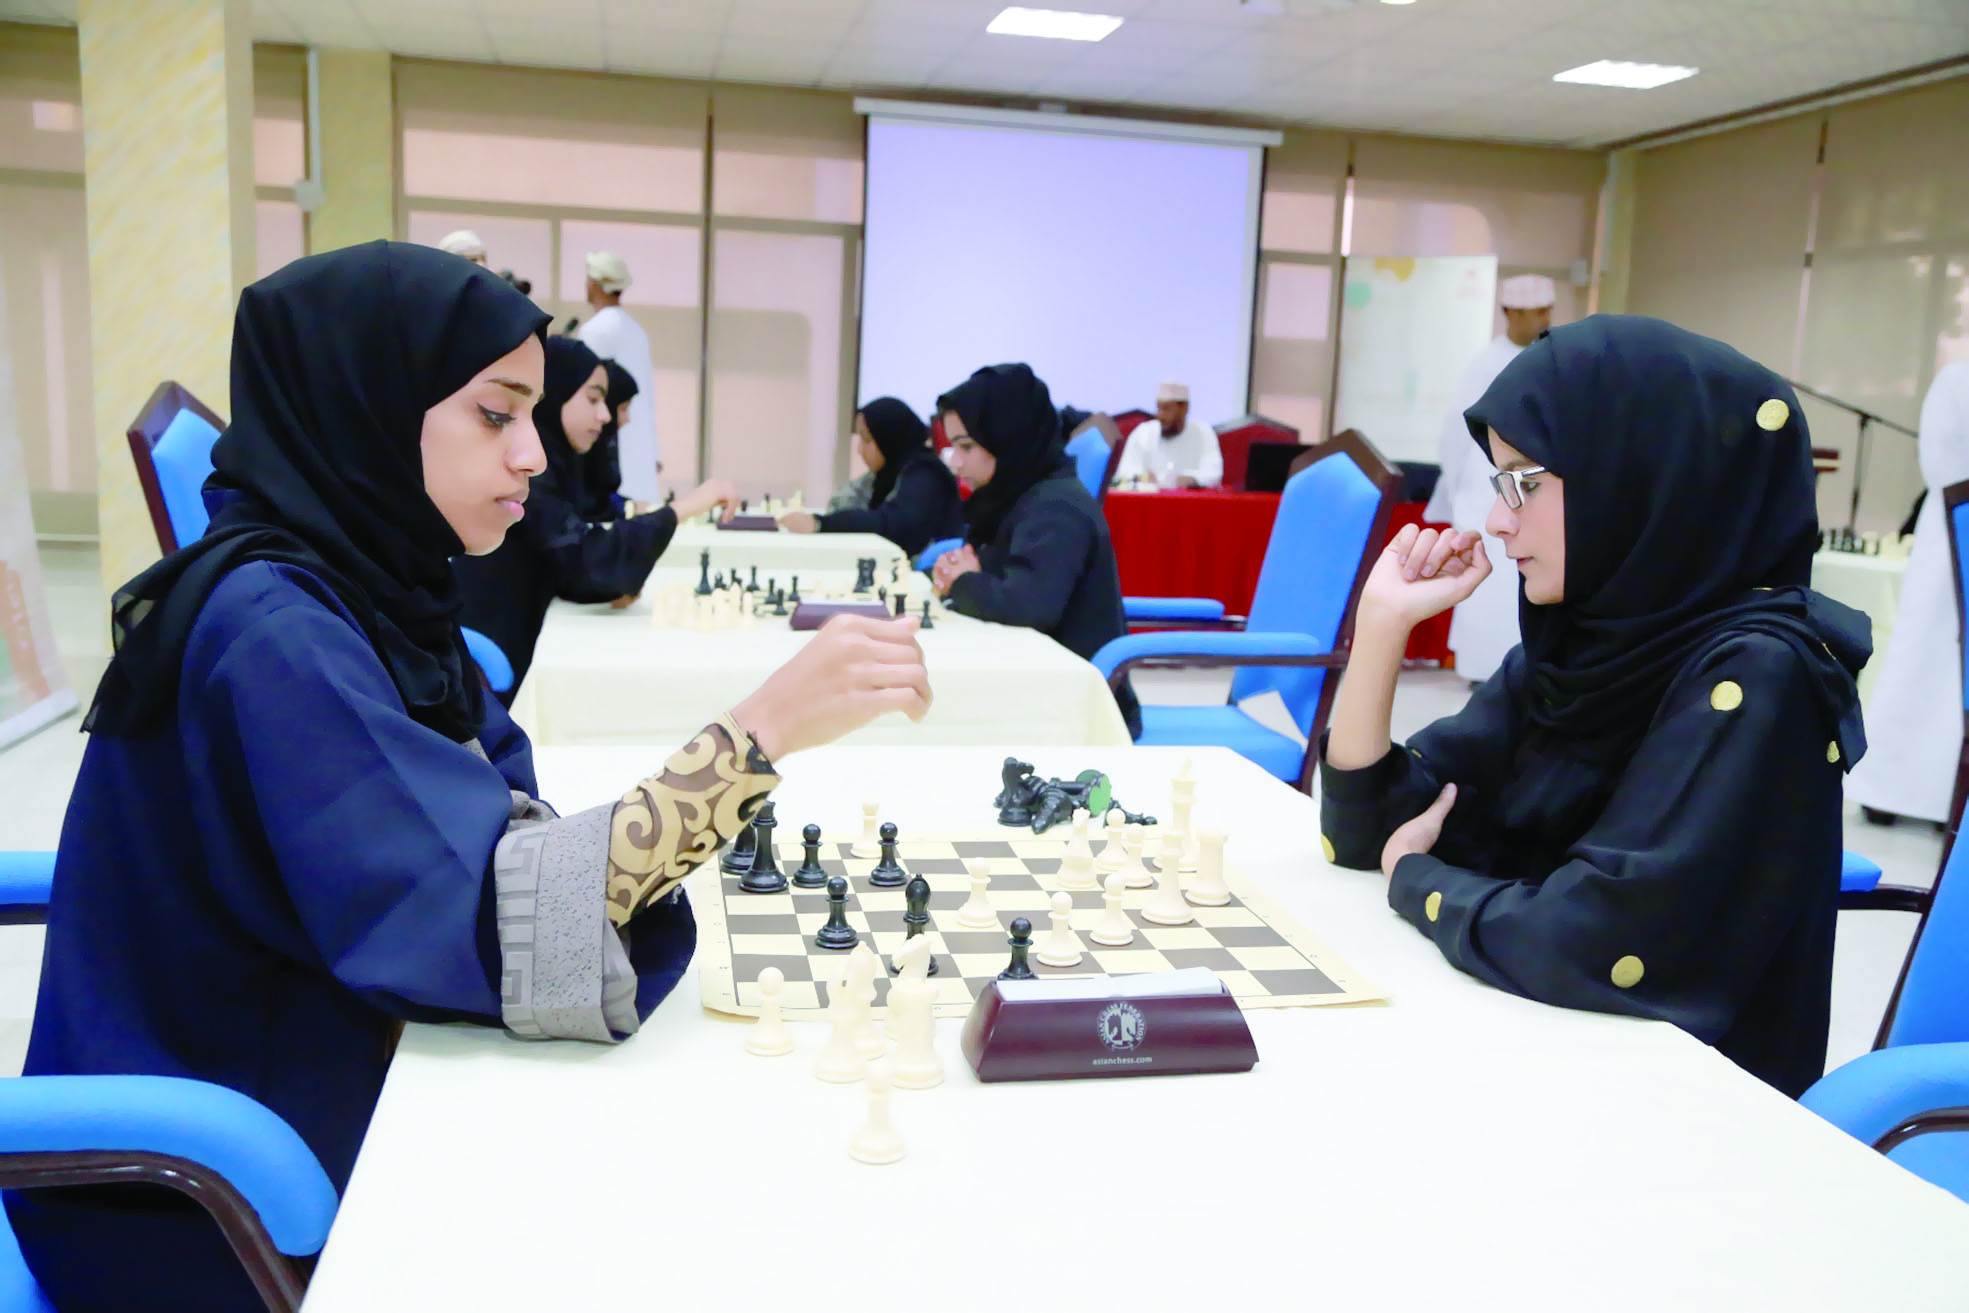 نهائيات الشطرنج ضمن مسابقة الأندية للإبداع الشبابي تشهد بروز عدد من المواهب.